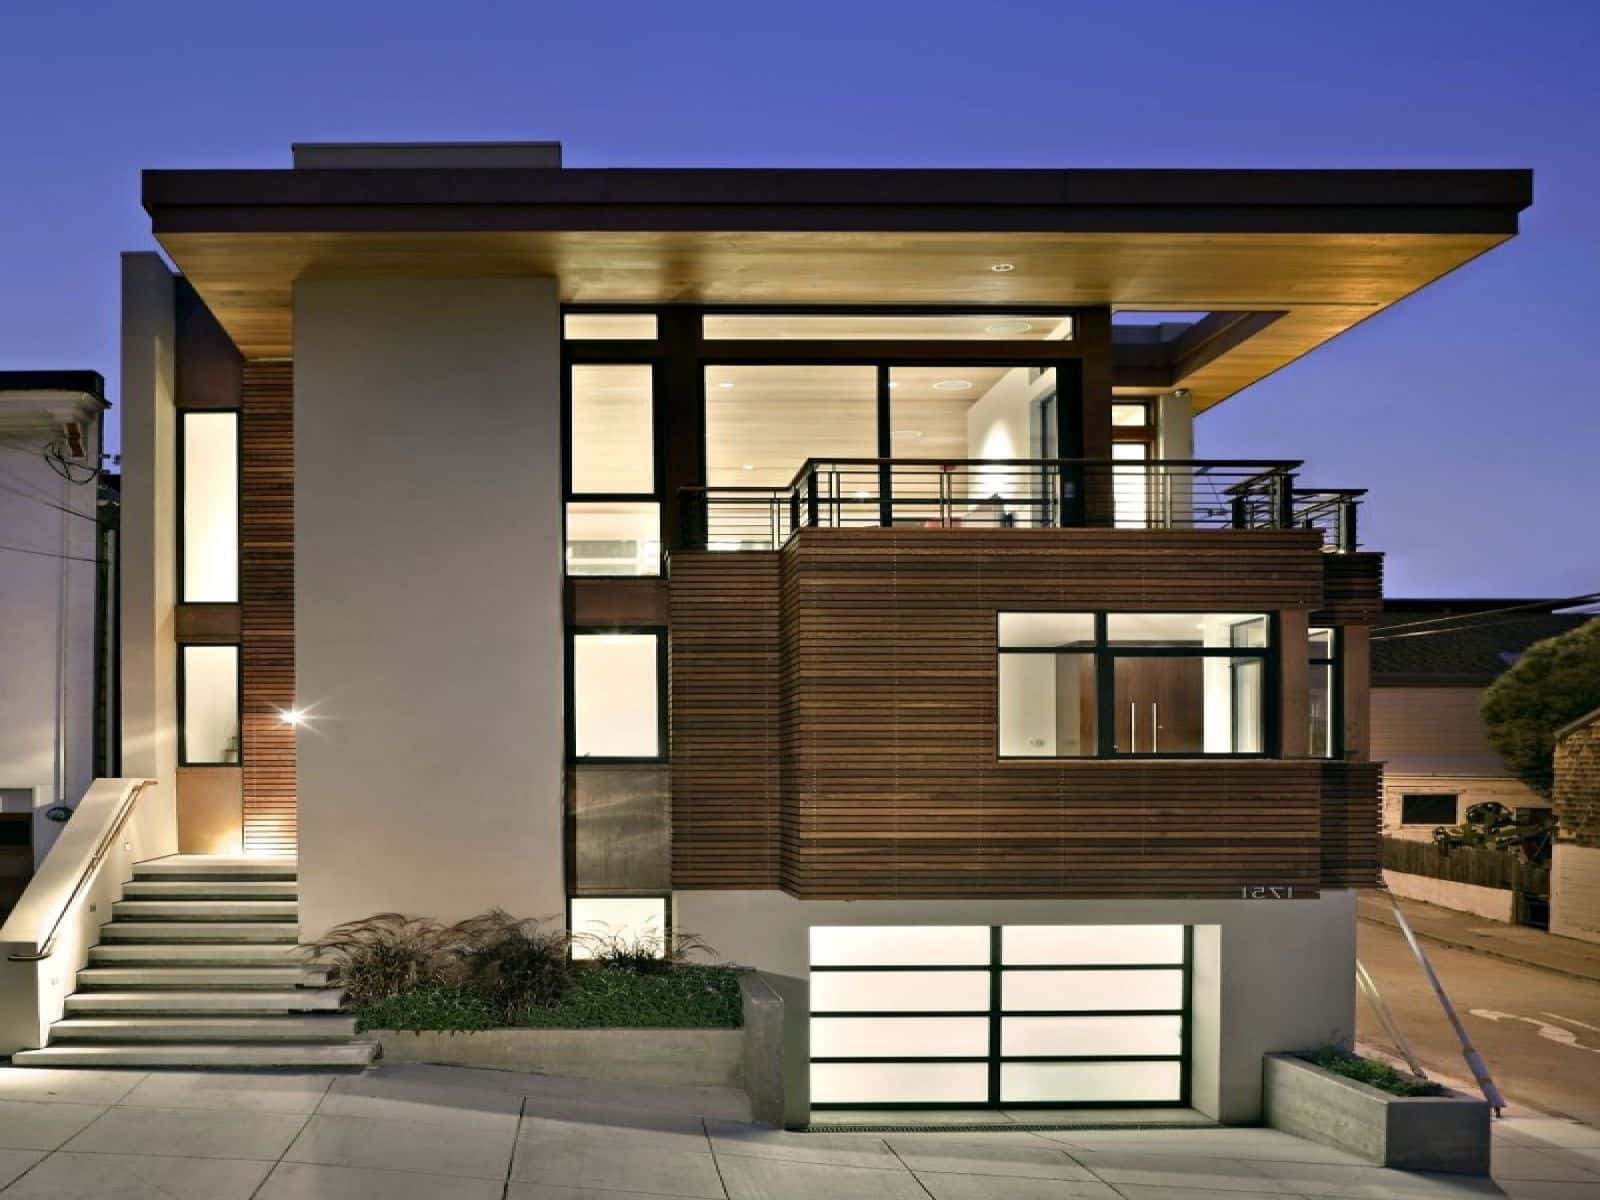  Desain Rumah Minimalis Split Level  desain  rumah  